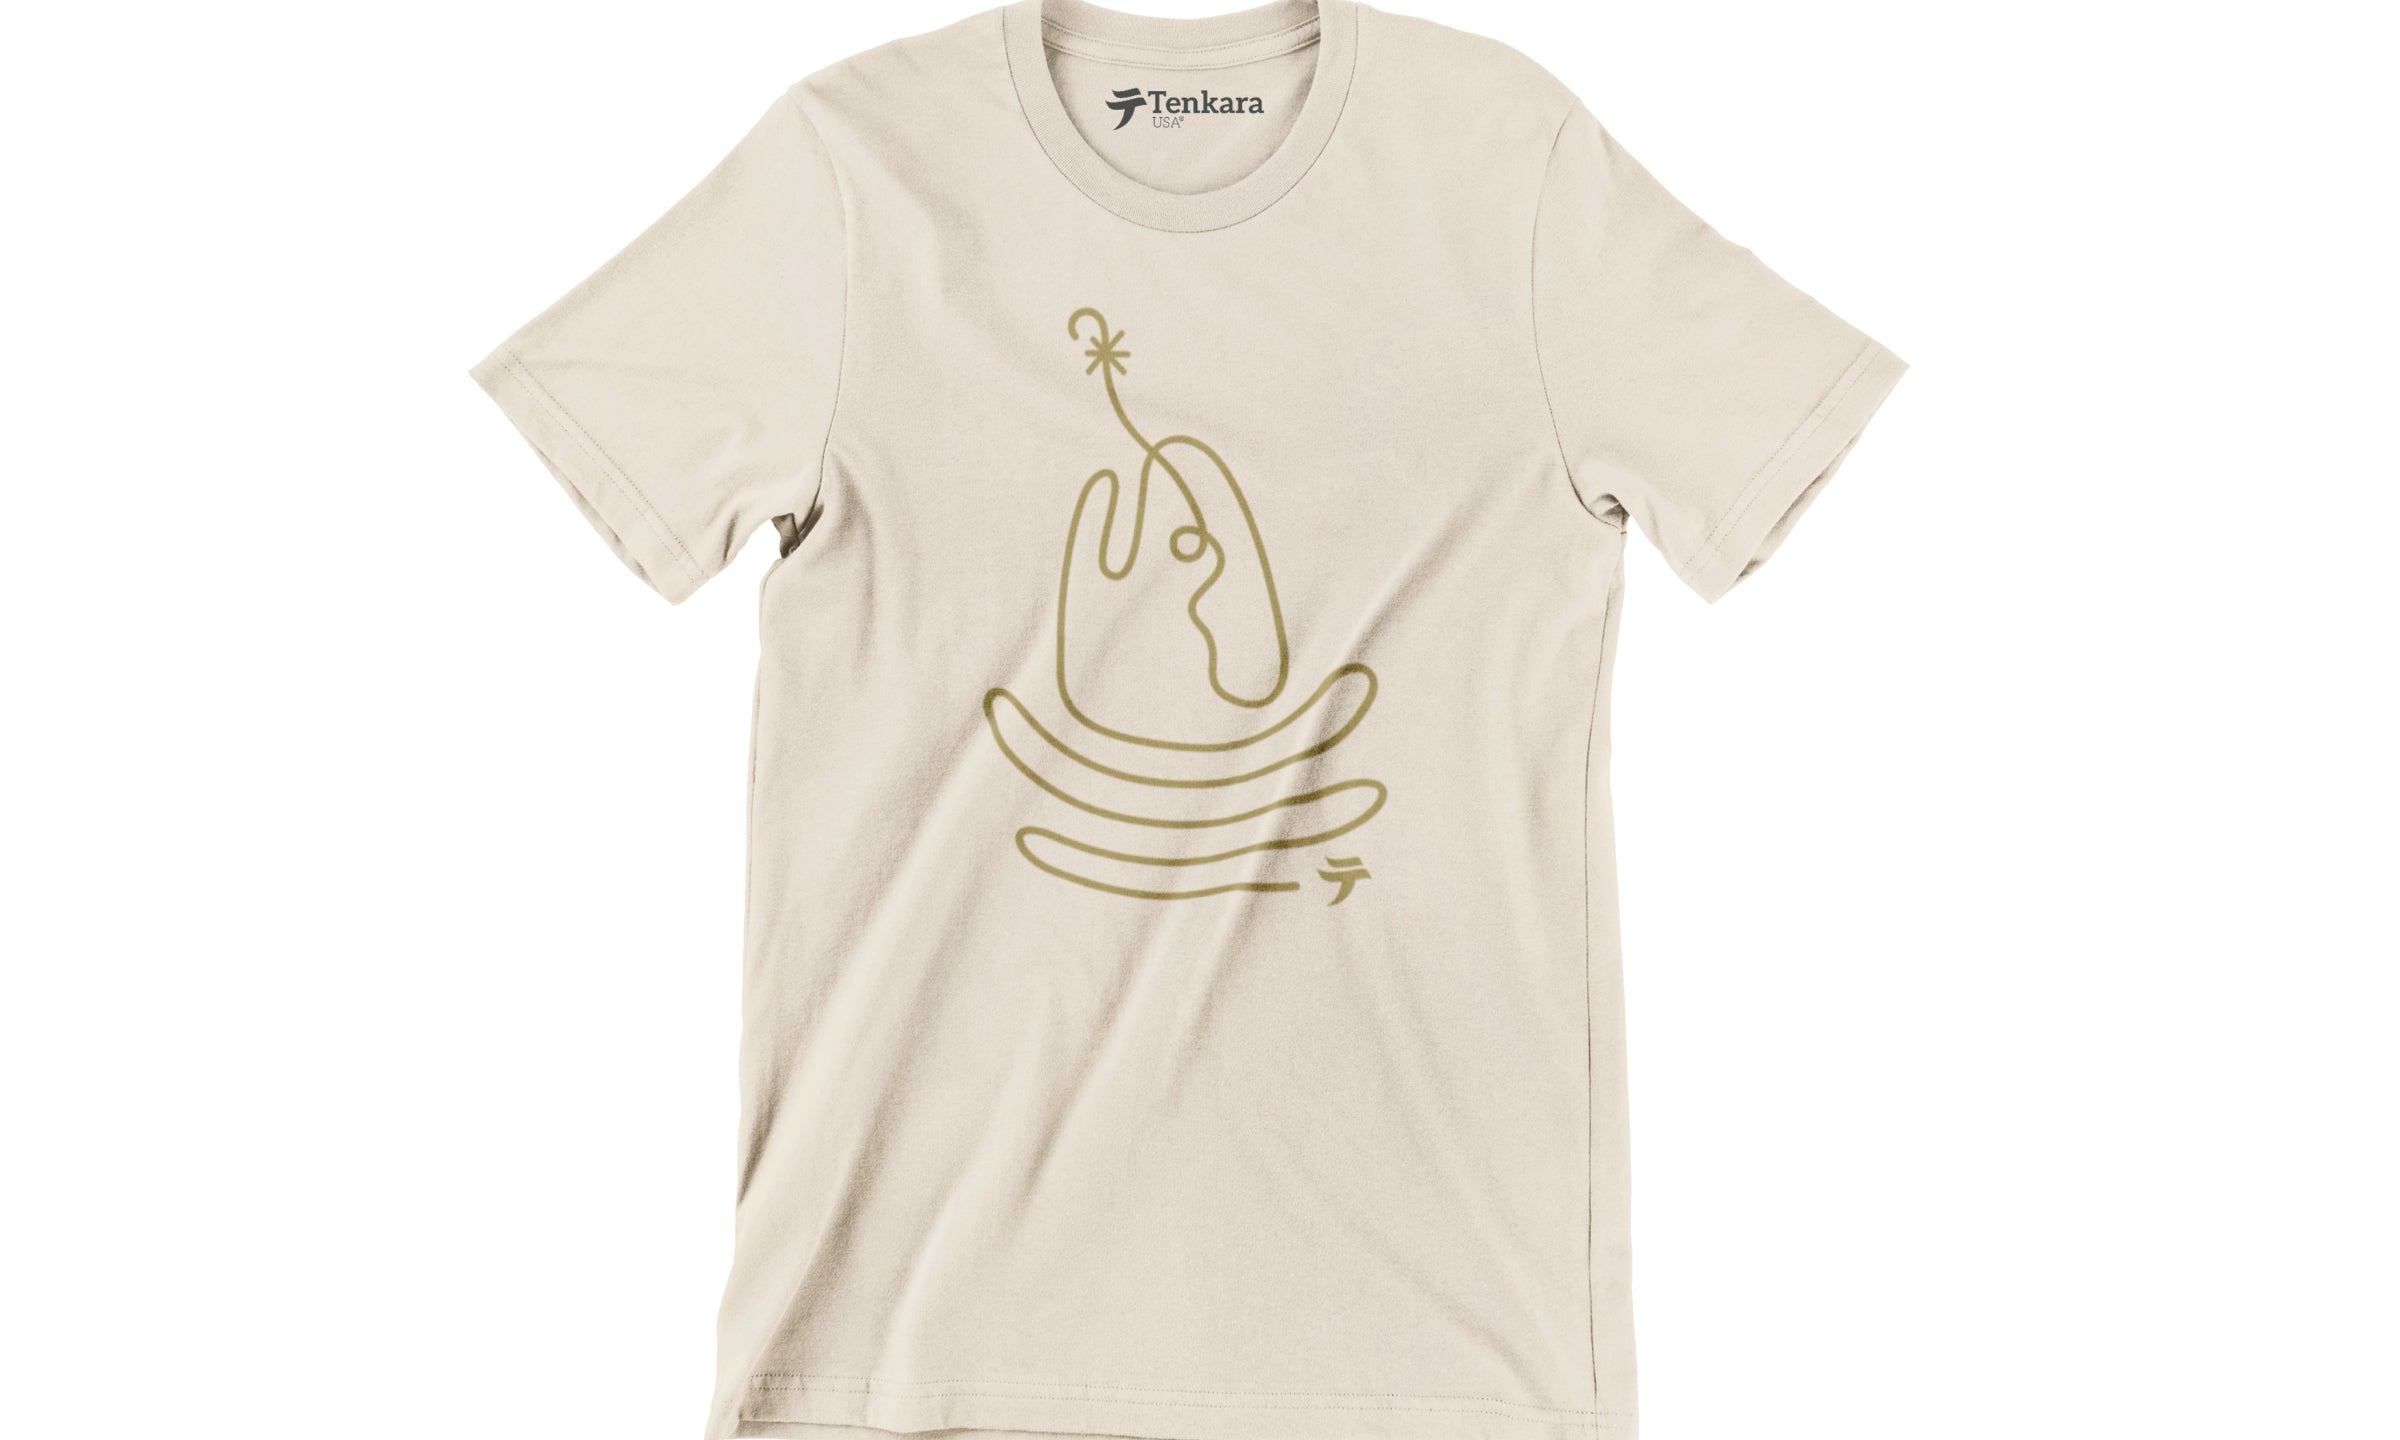 Tenkara USA Riseform T-Shirt.